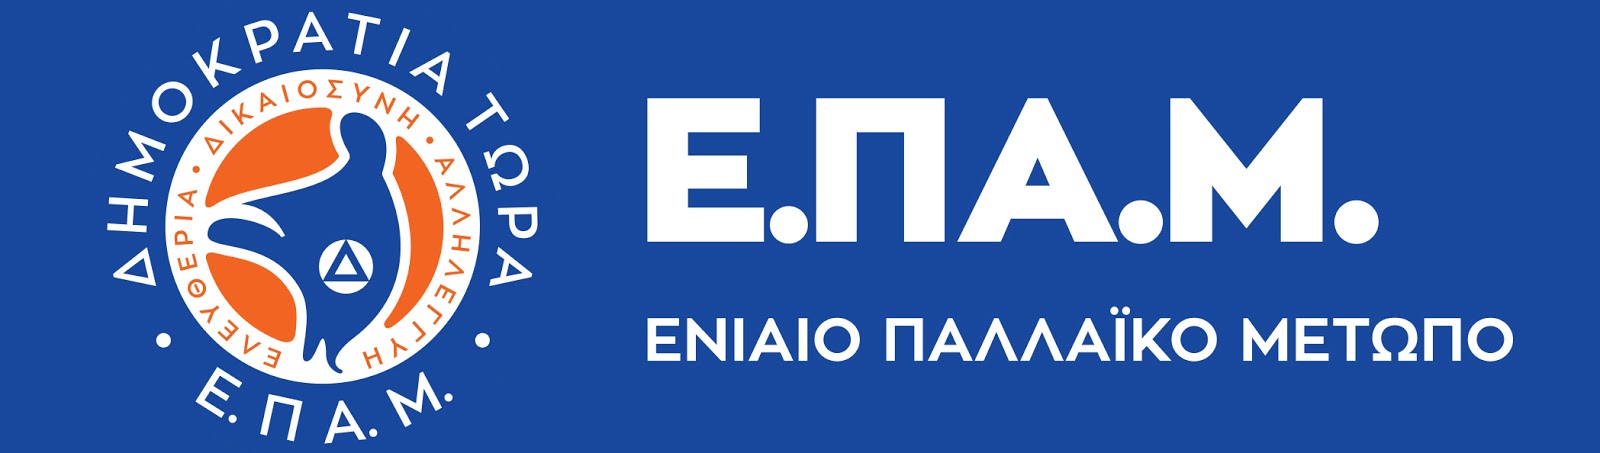 Λογότυπο ΕΠΑΜ white text